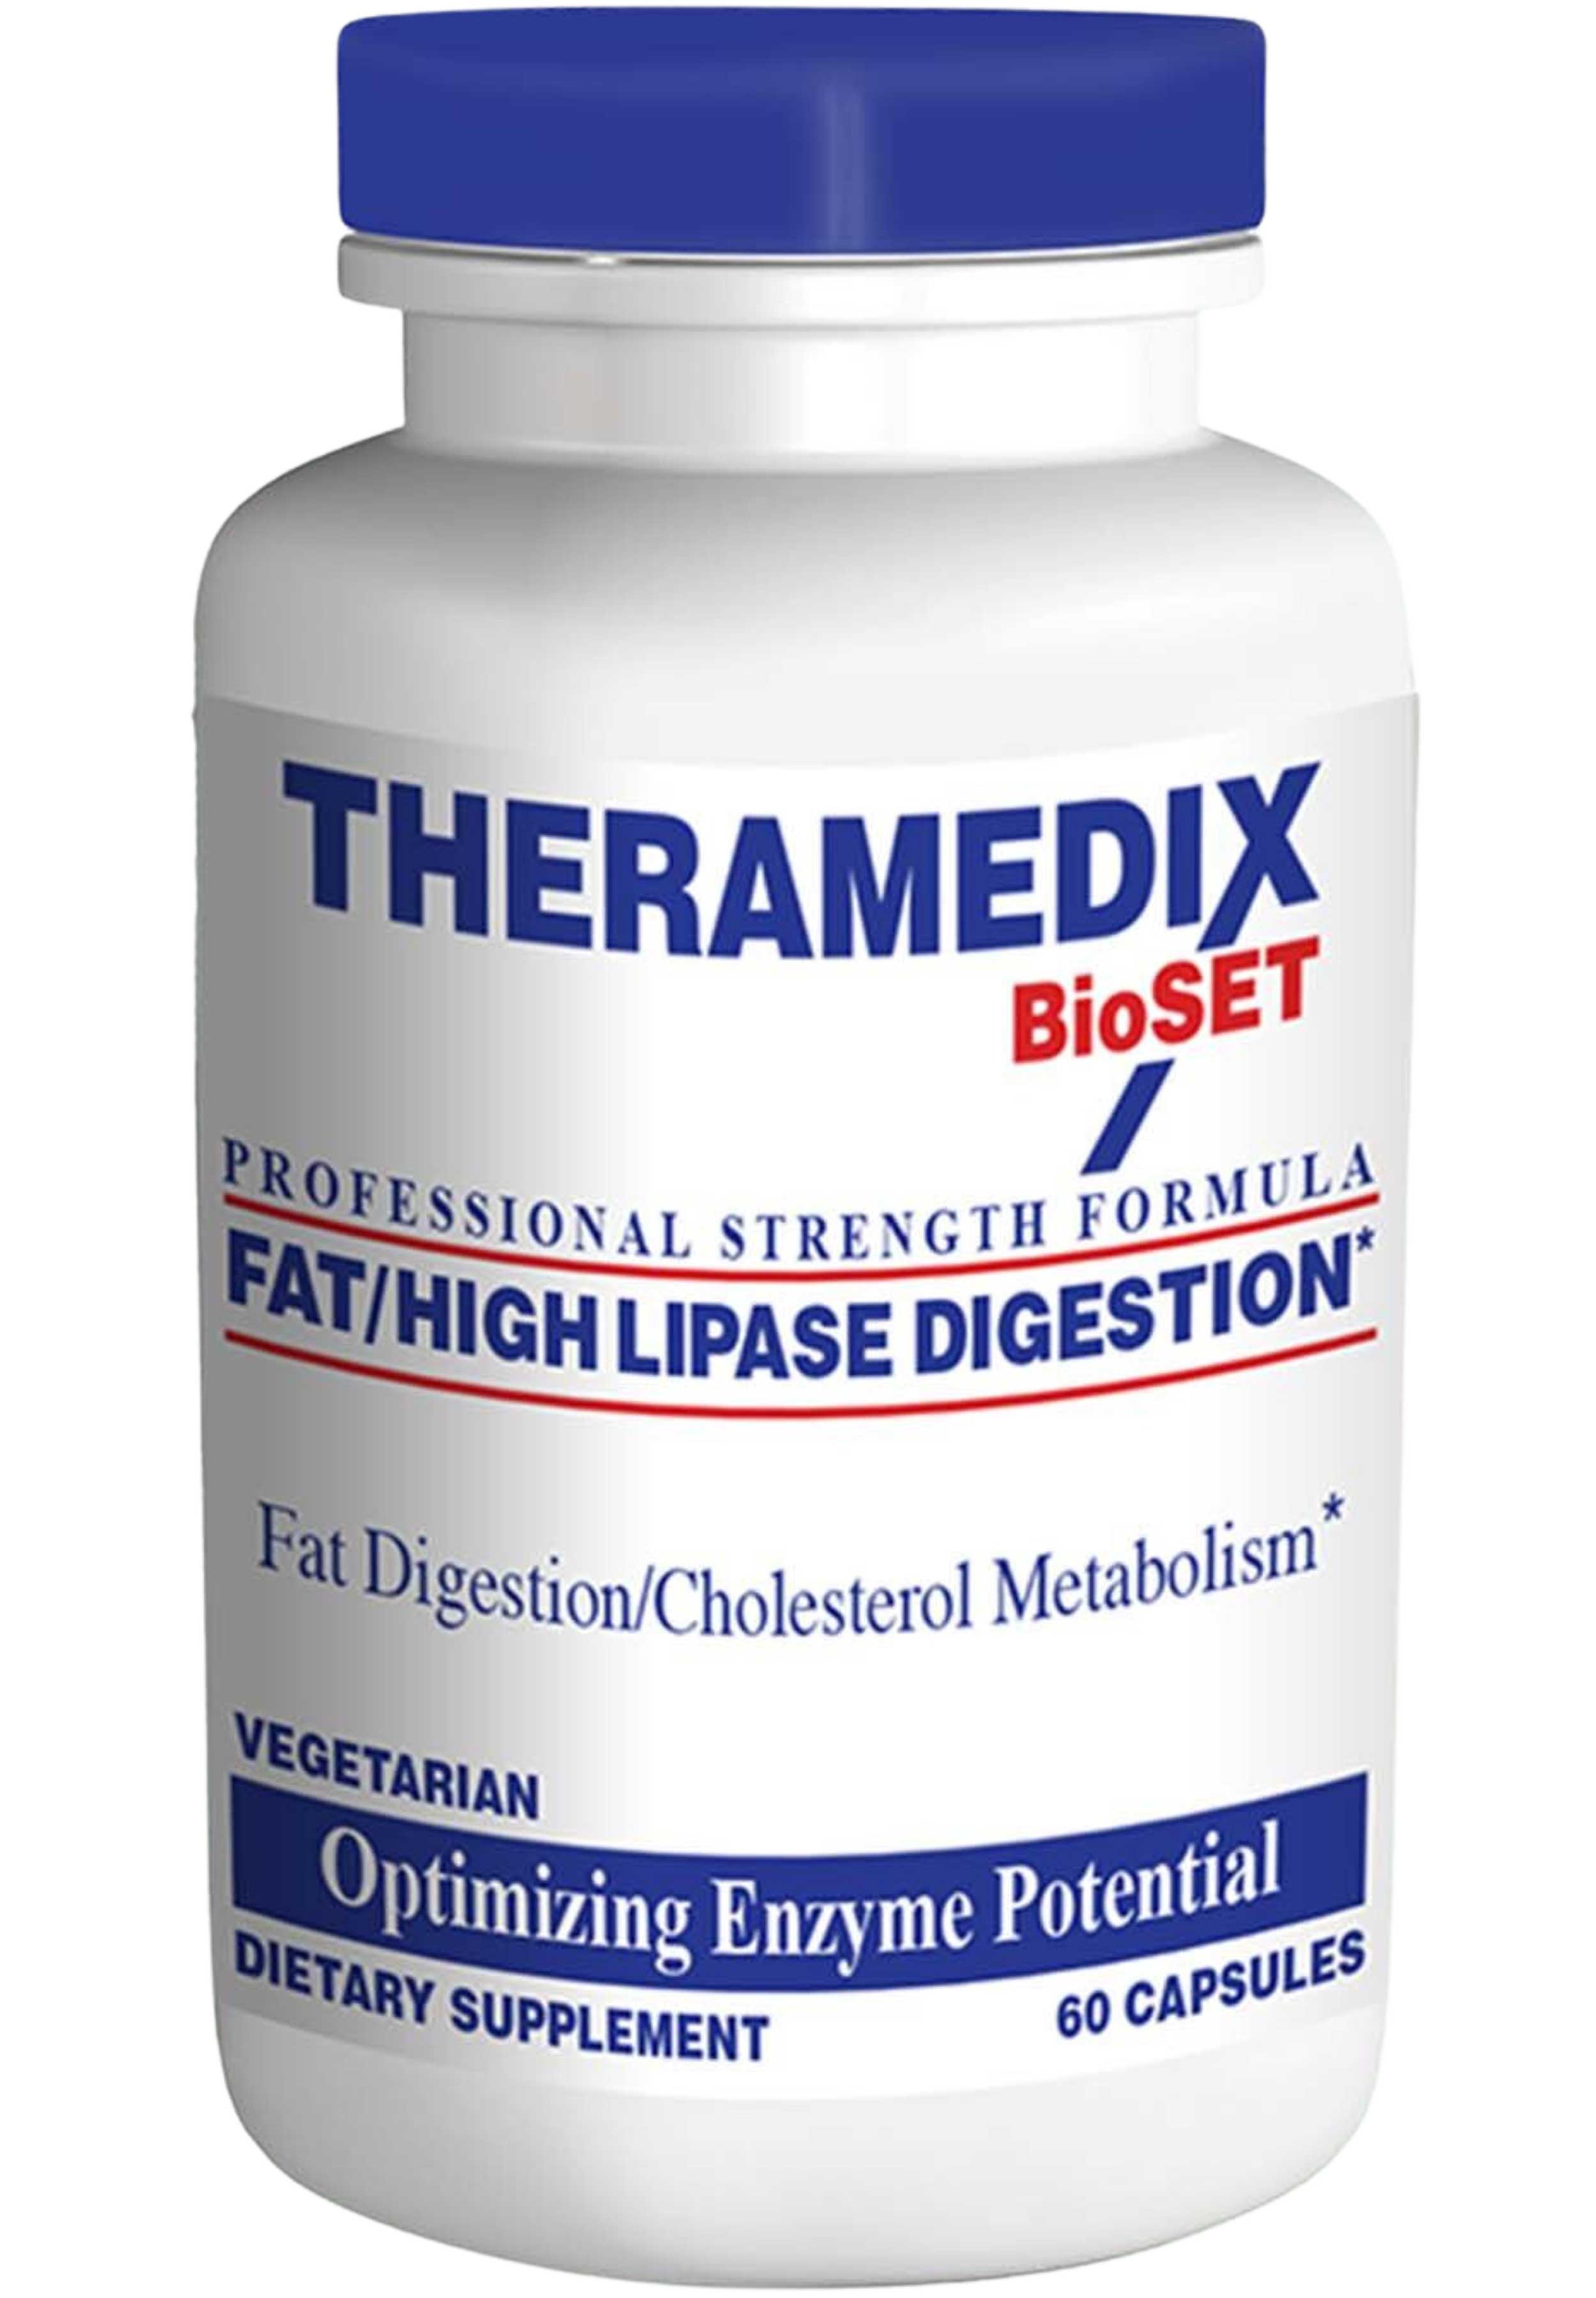 Theramedix Fat/High Lipase Digestion